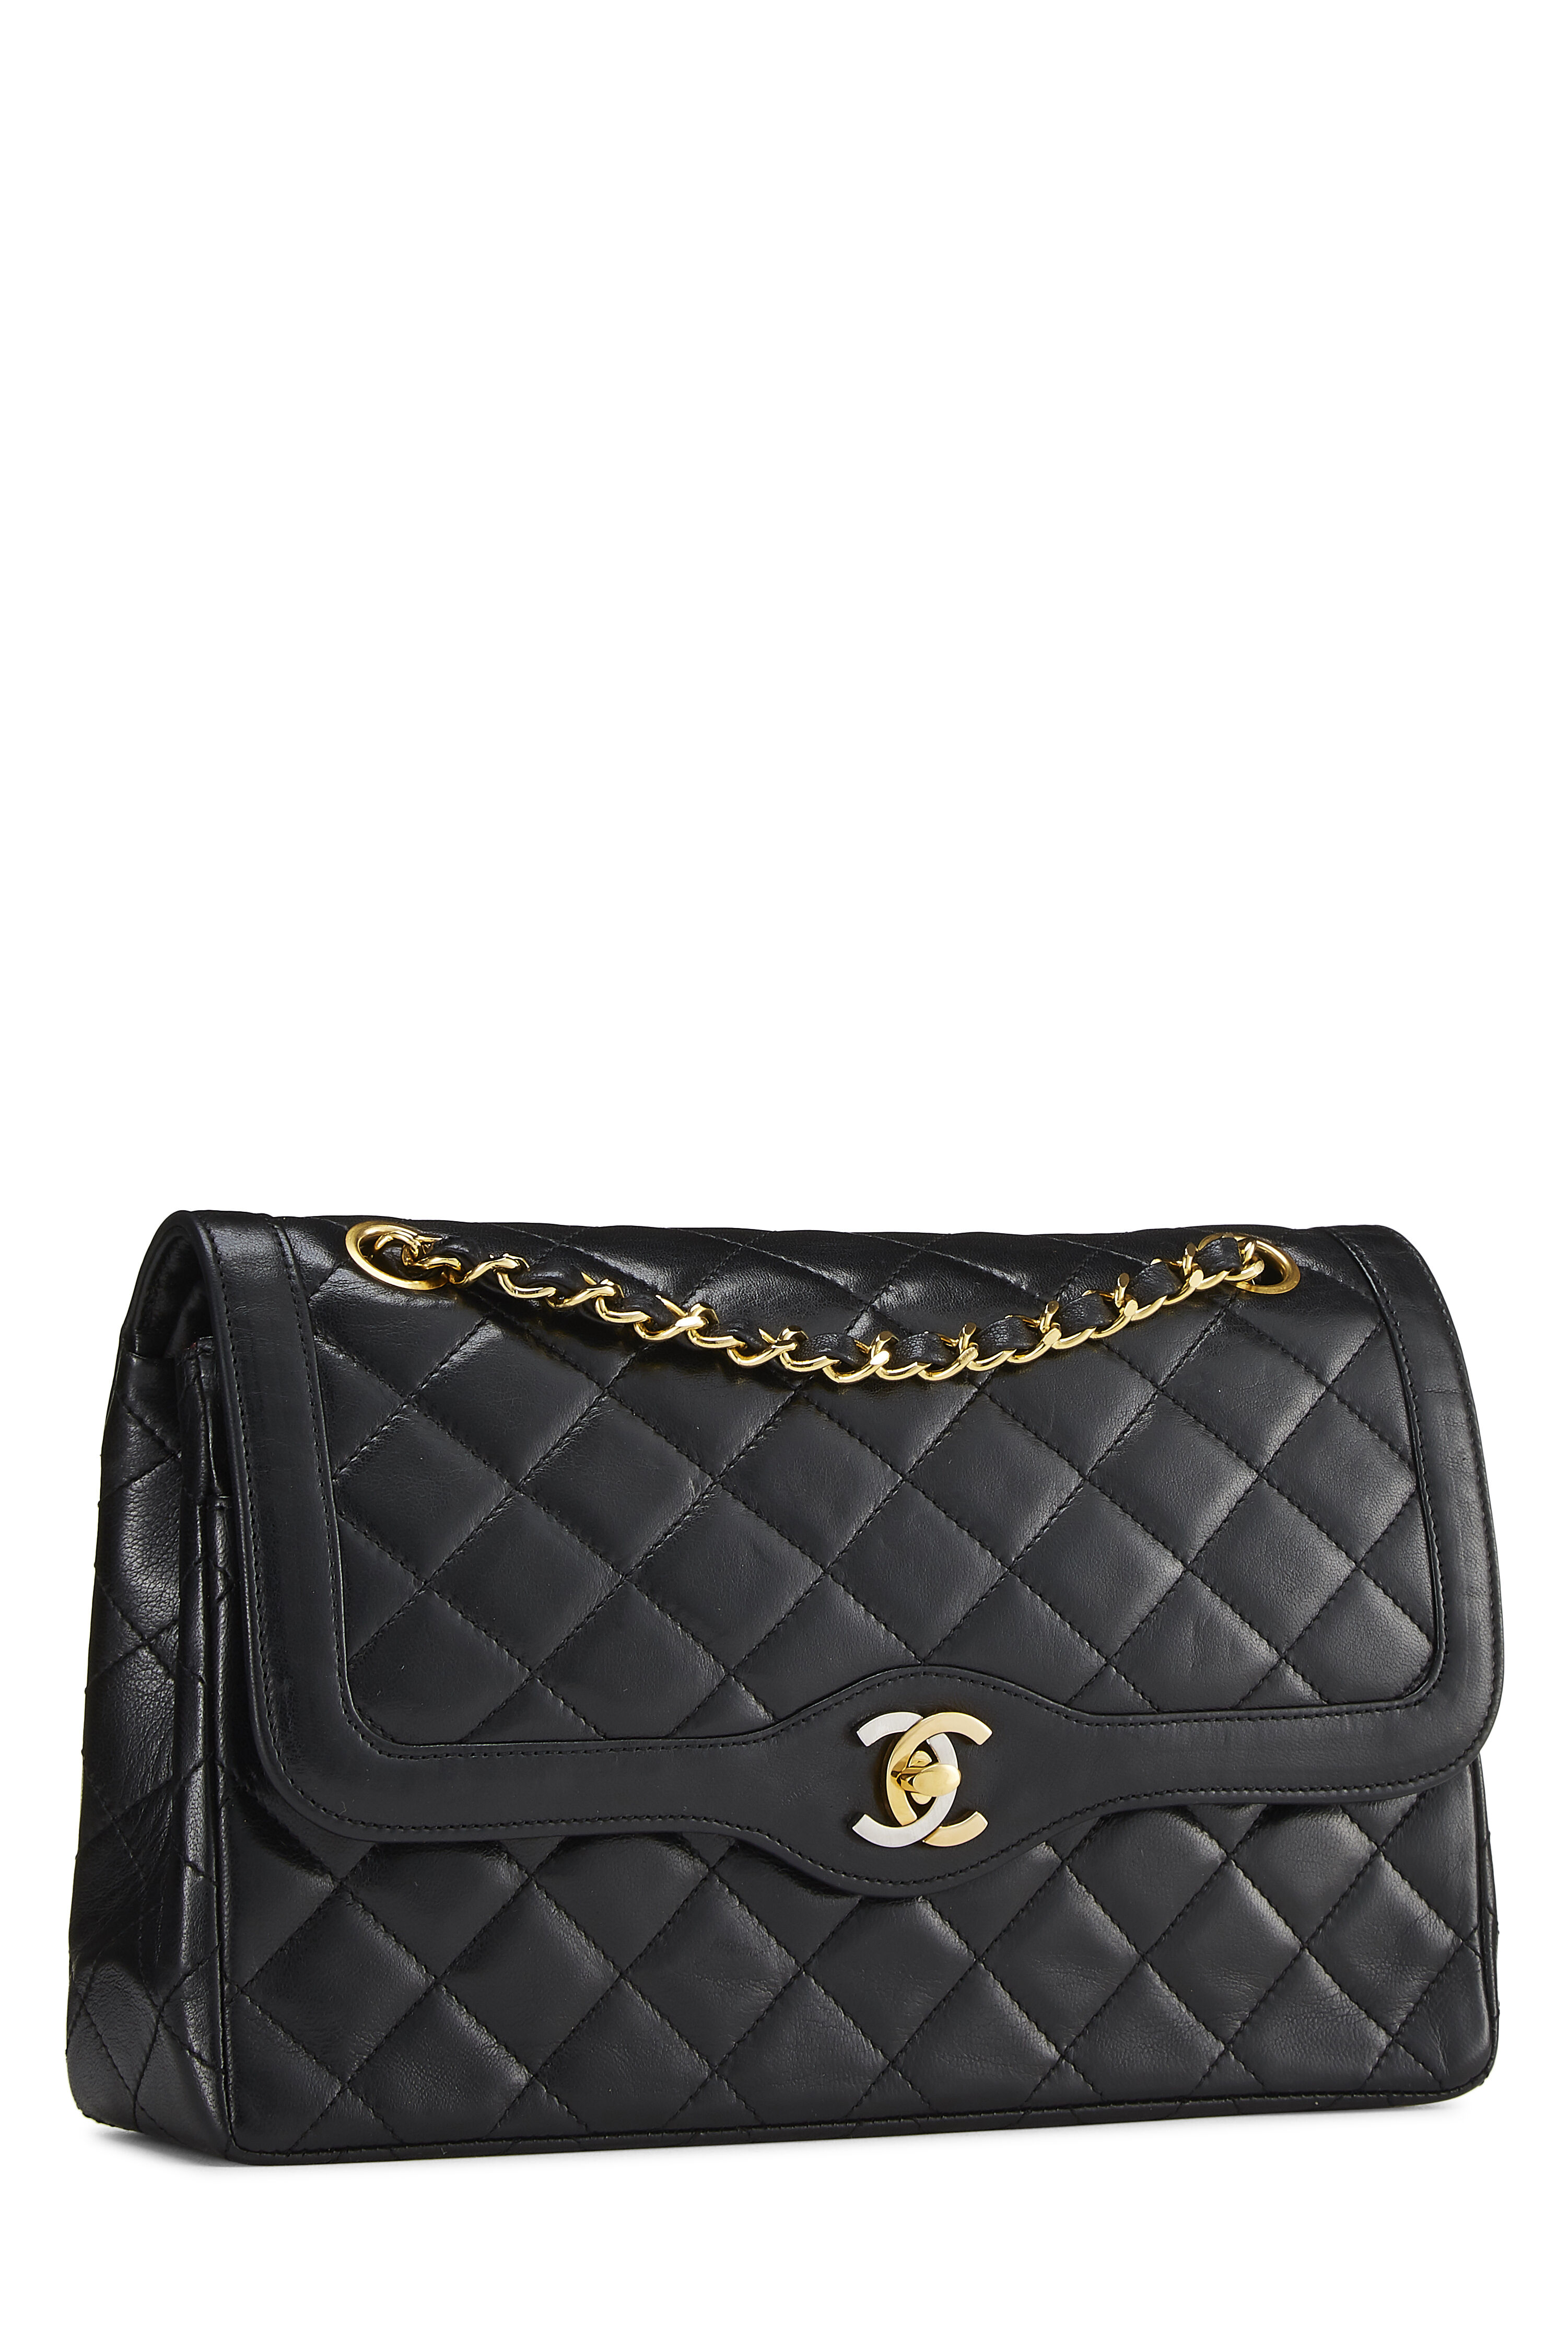 Chanel Black Lambskin Paris Limited Double Flap Large